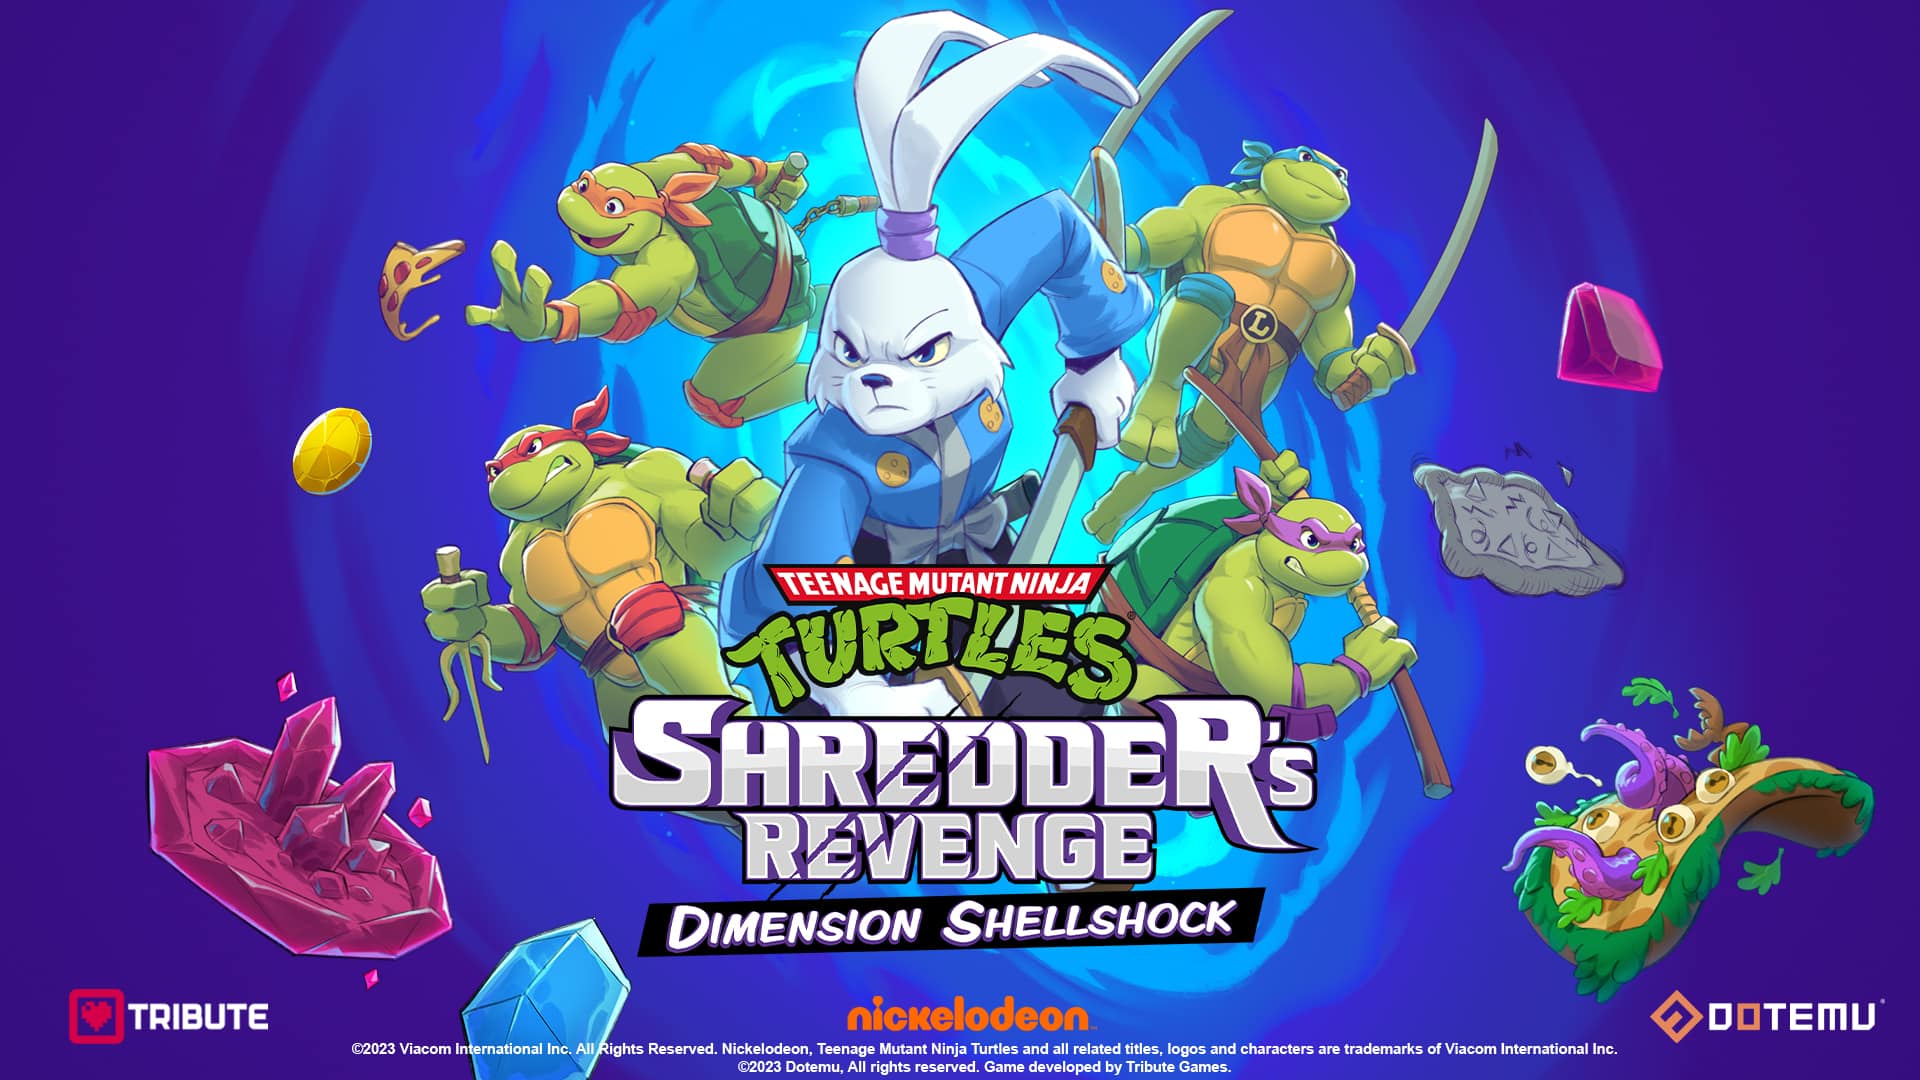 Teenage Mutant Ninja Turtles: Shredder's Revenge Dimension Shellshock DLC Revealed 1